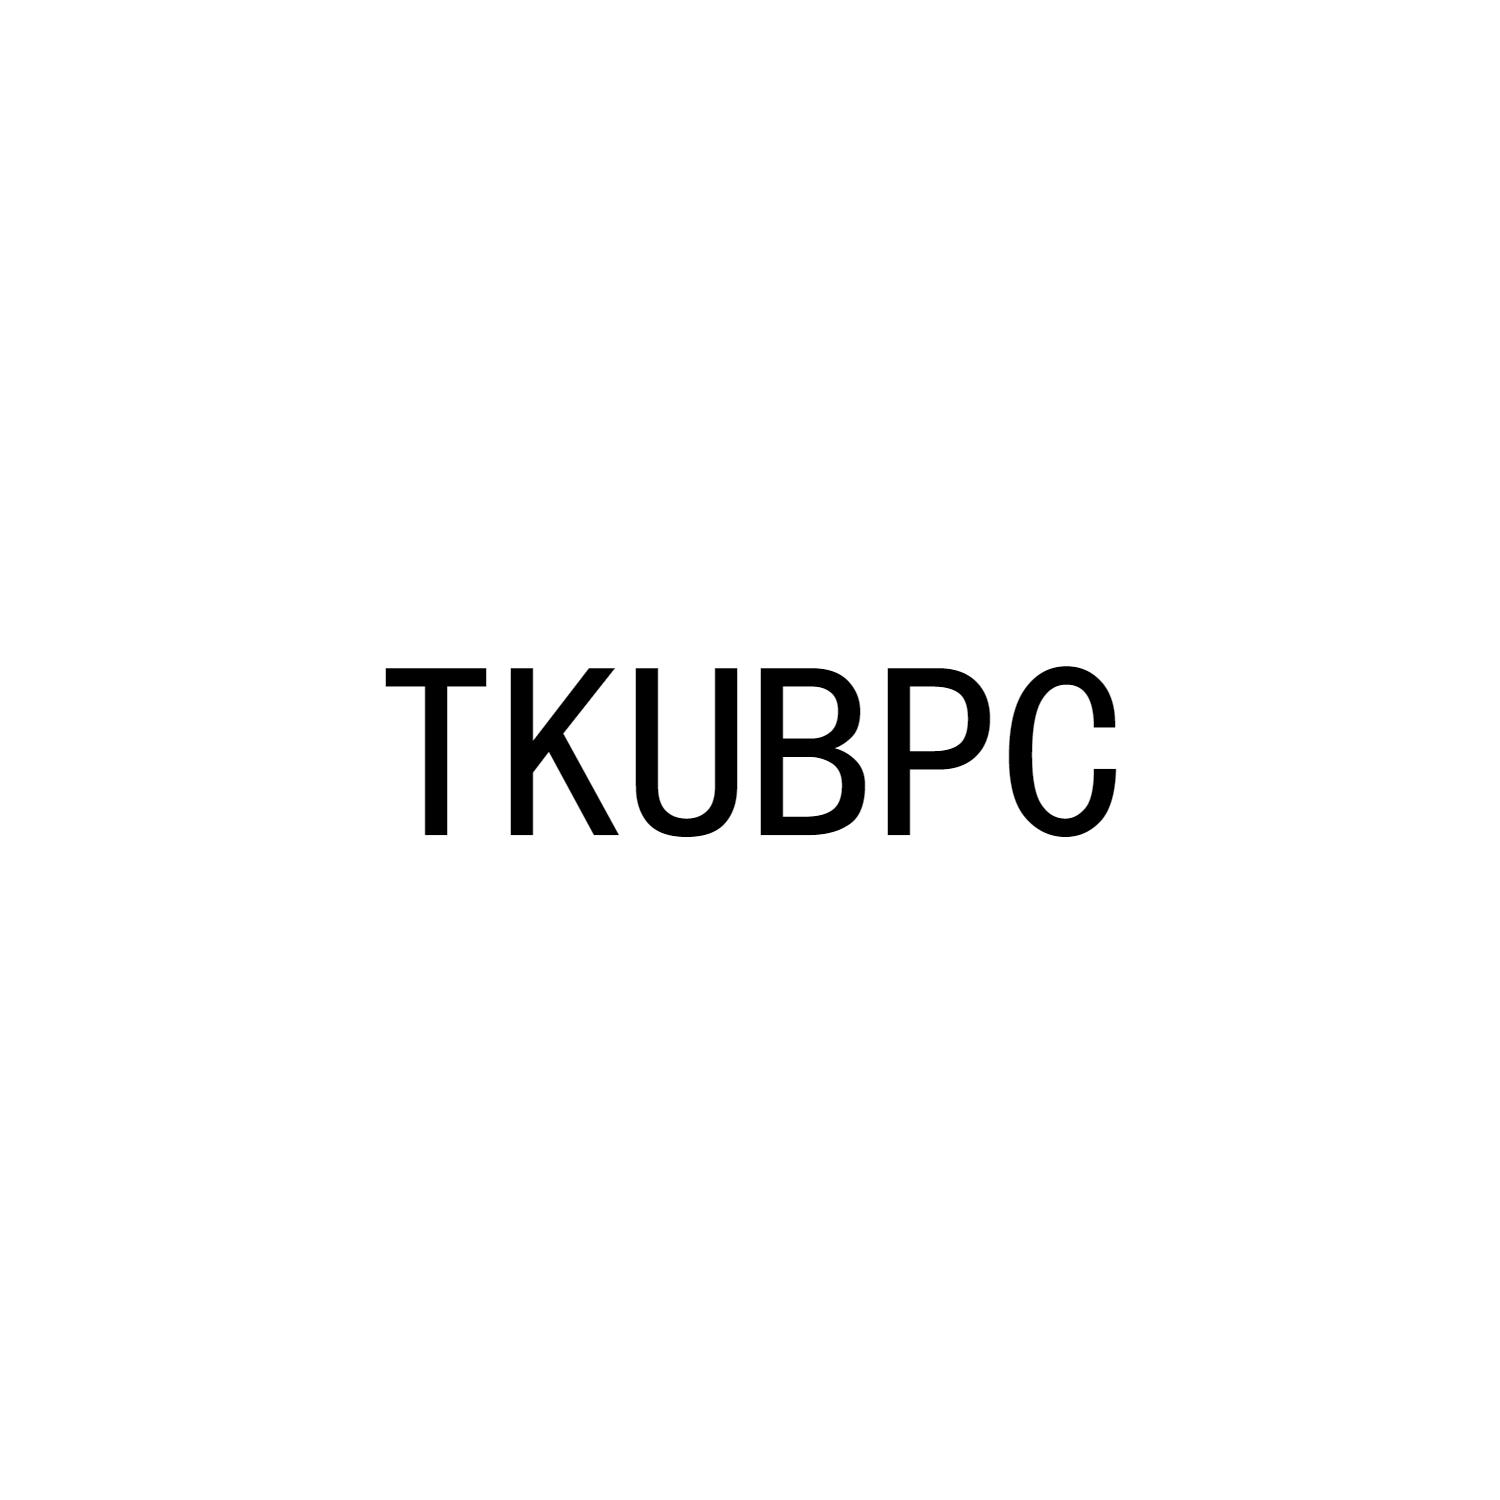 TKUBPC